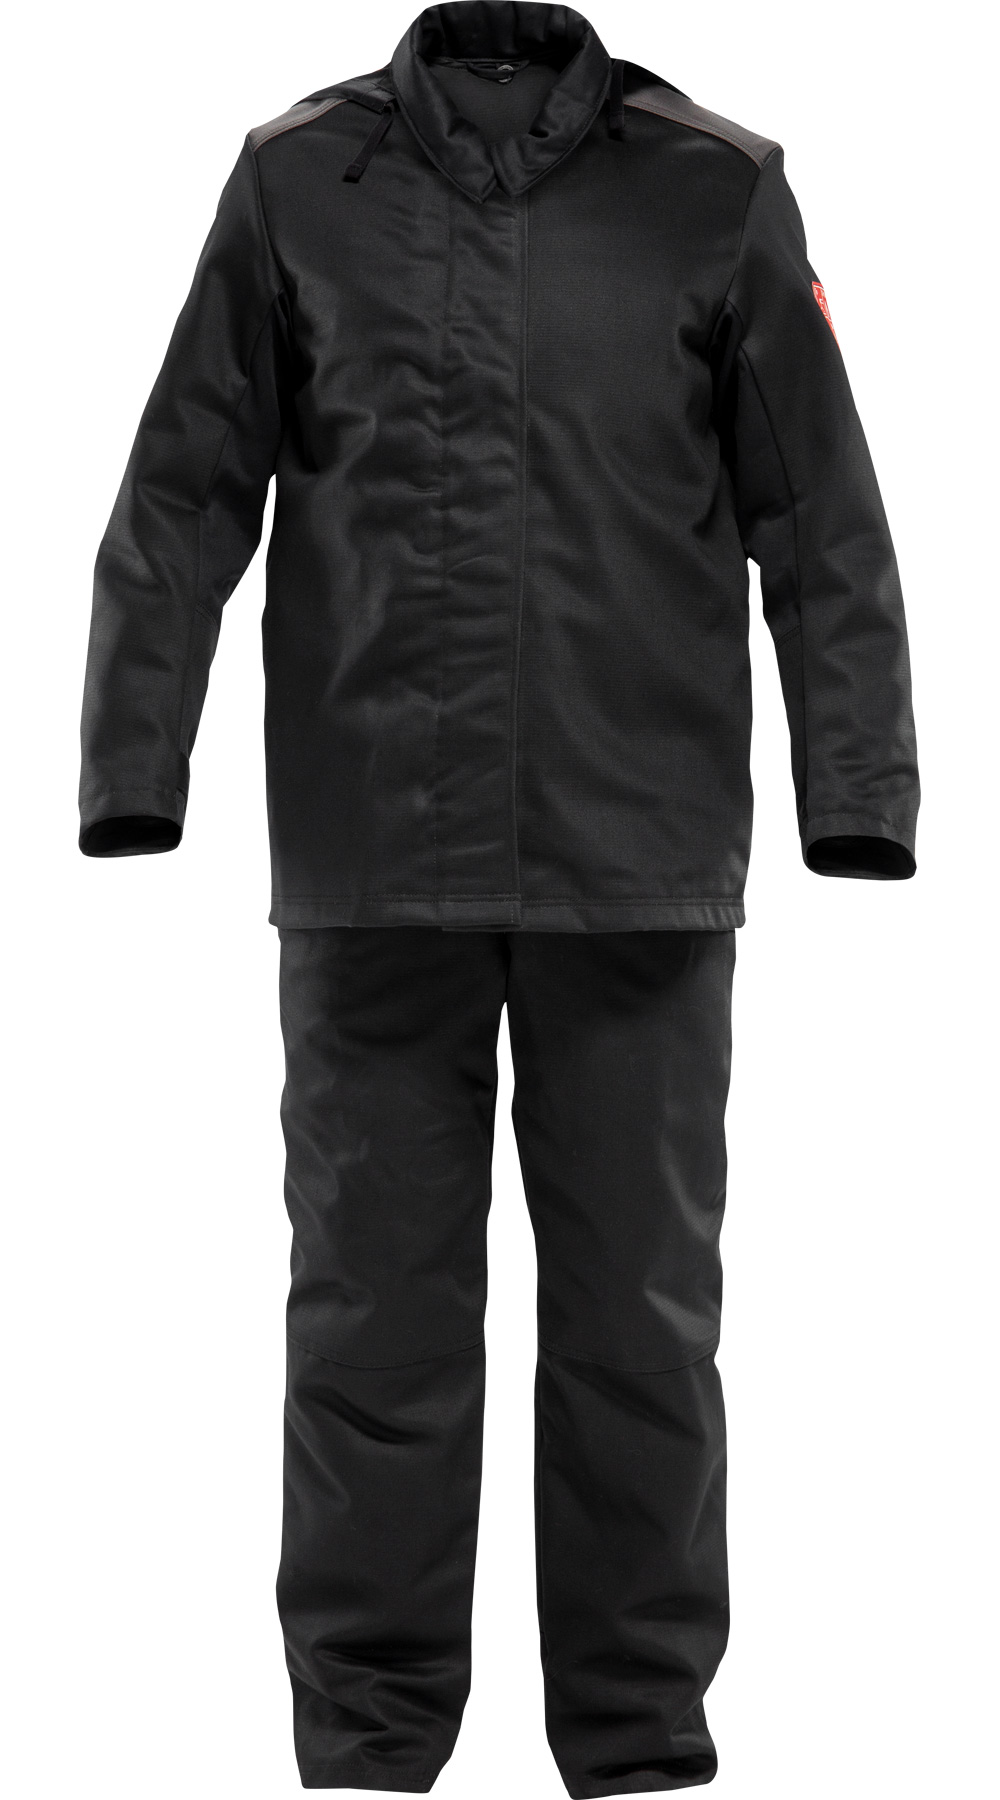 Зимний костюм сварщика "ЗЕВС ПЛЮС", цвет: черно-серый, ткань: Арсенал